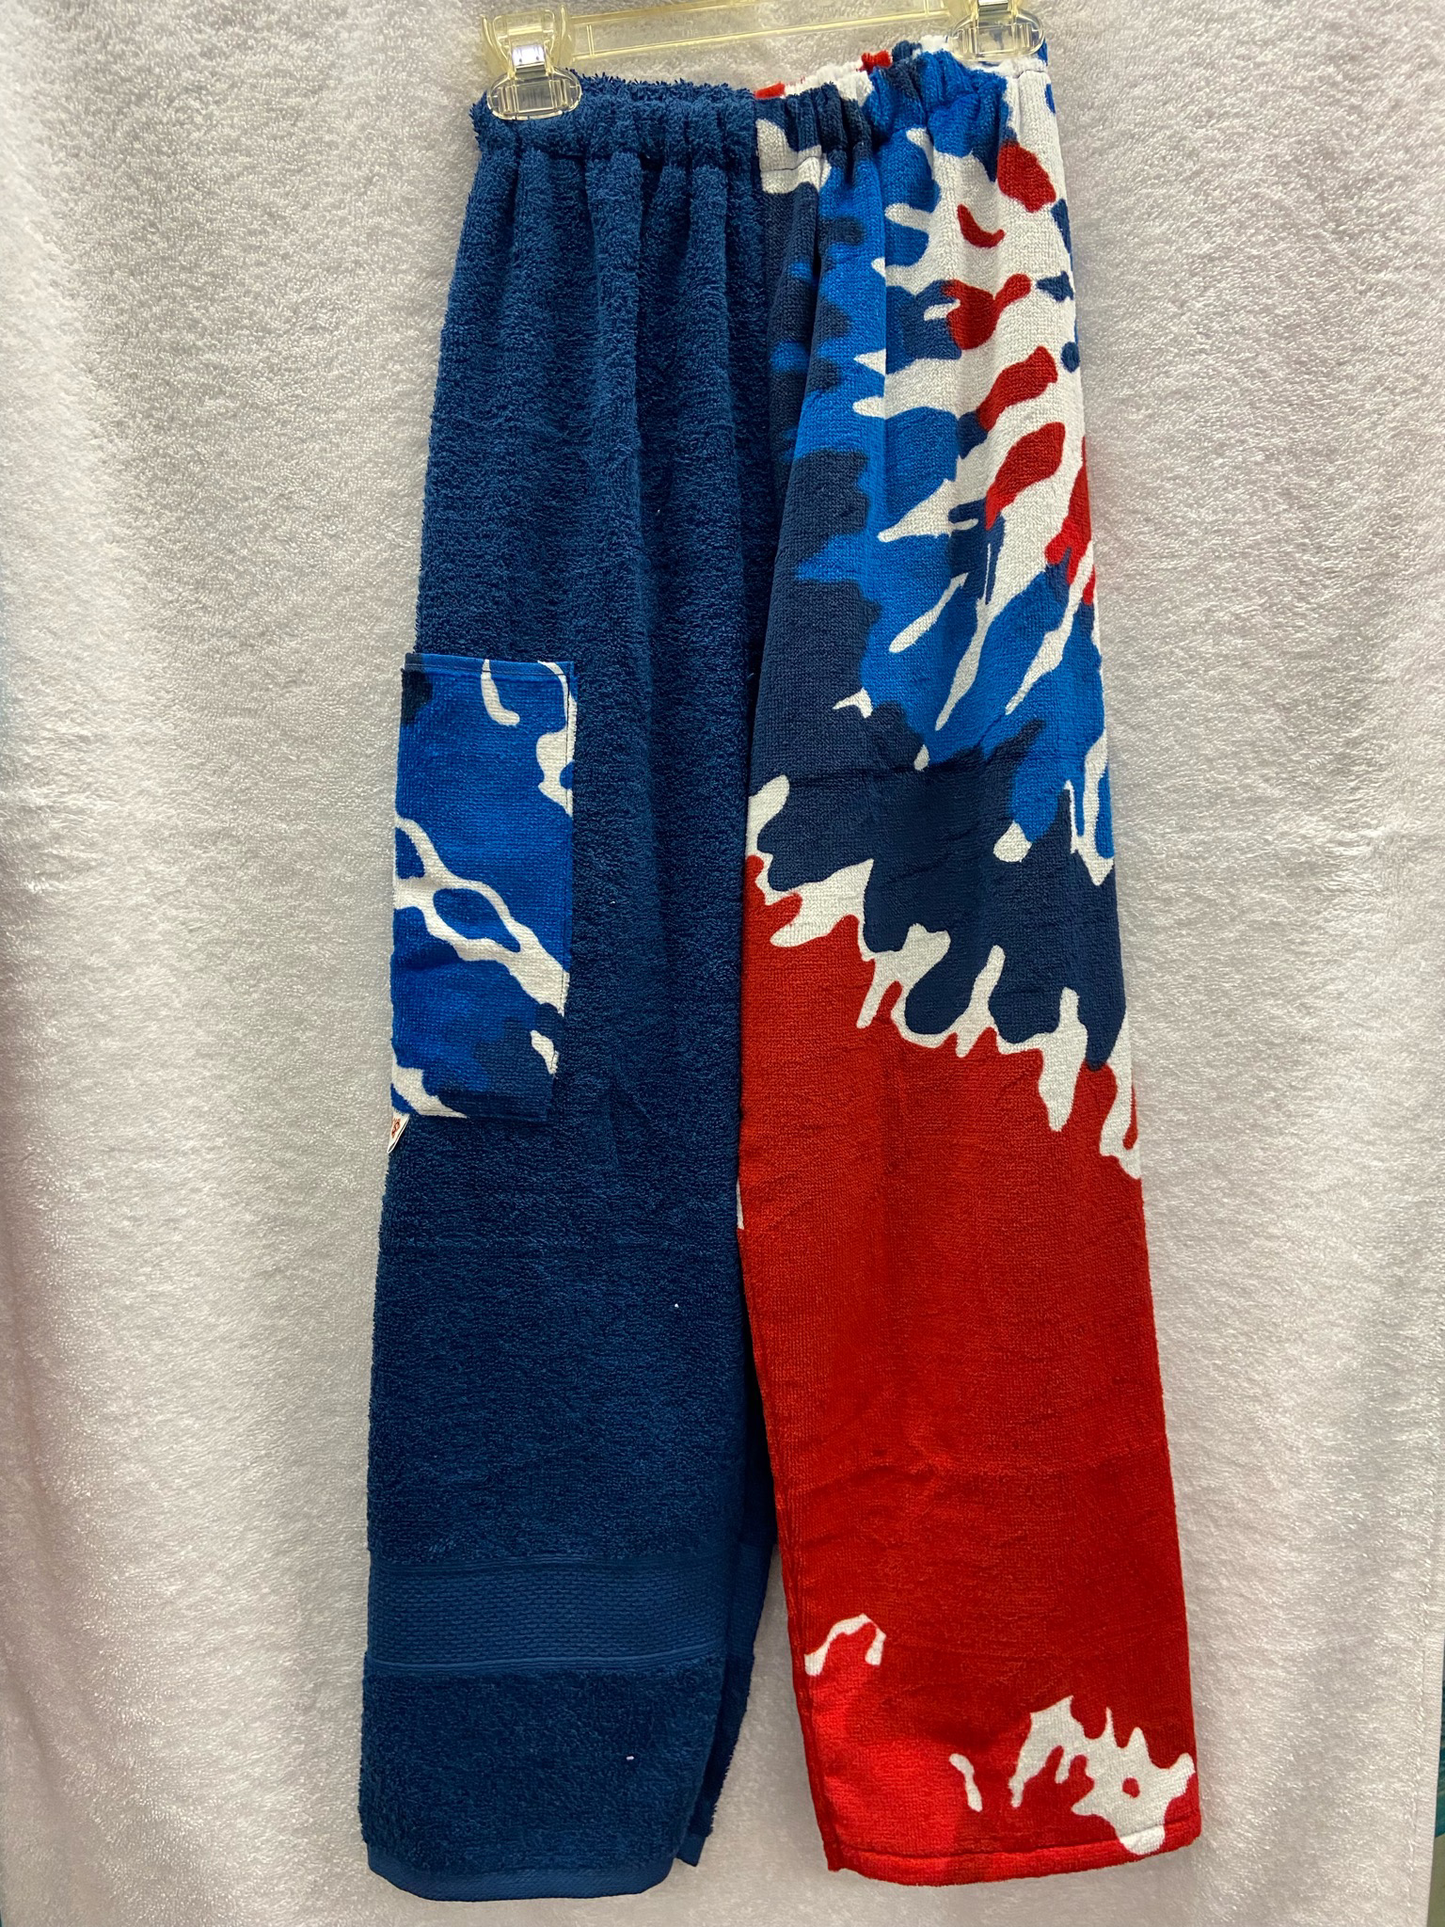 XL Tie Dye Navy Red White Blue Towel Pants